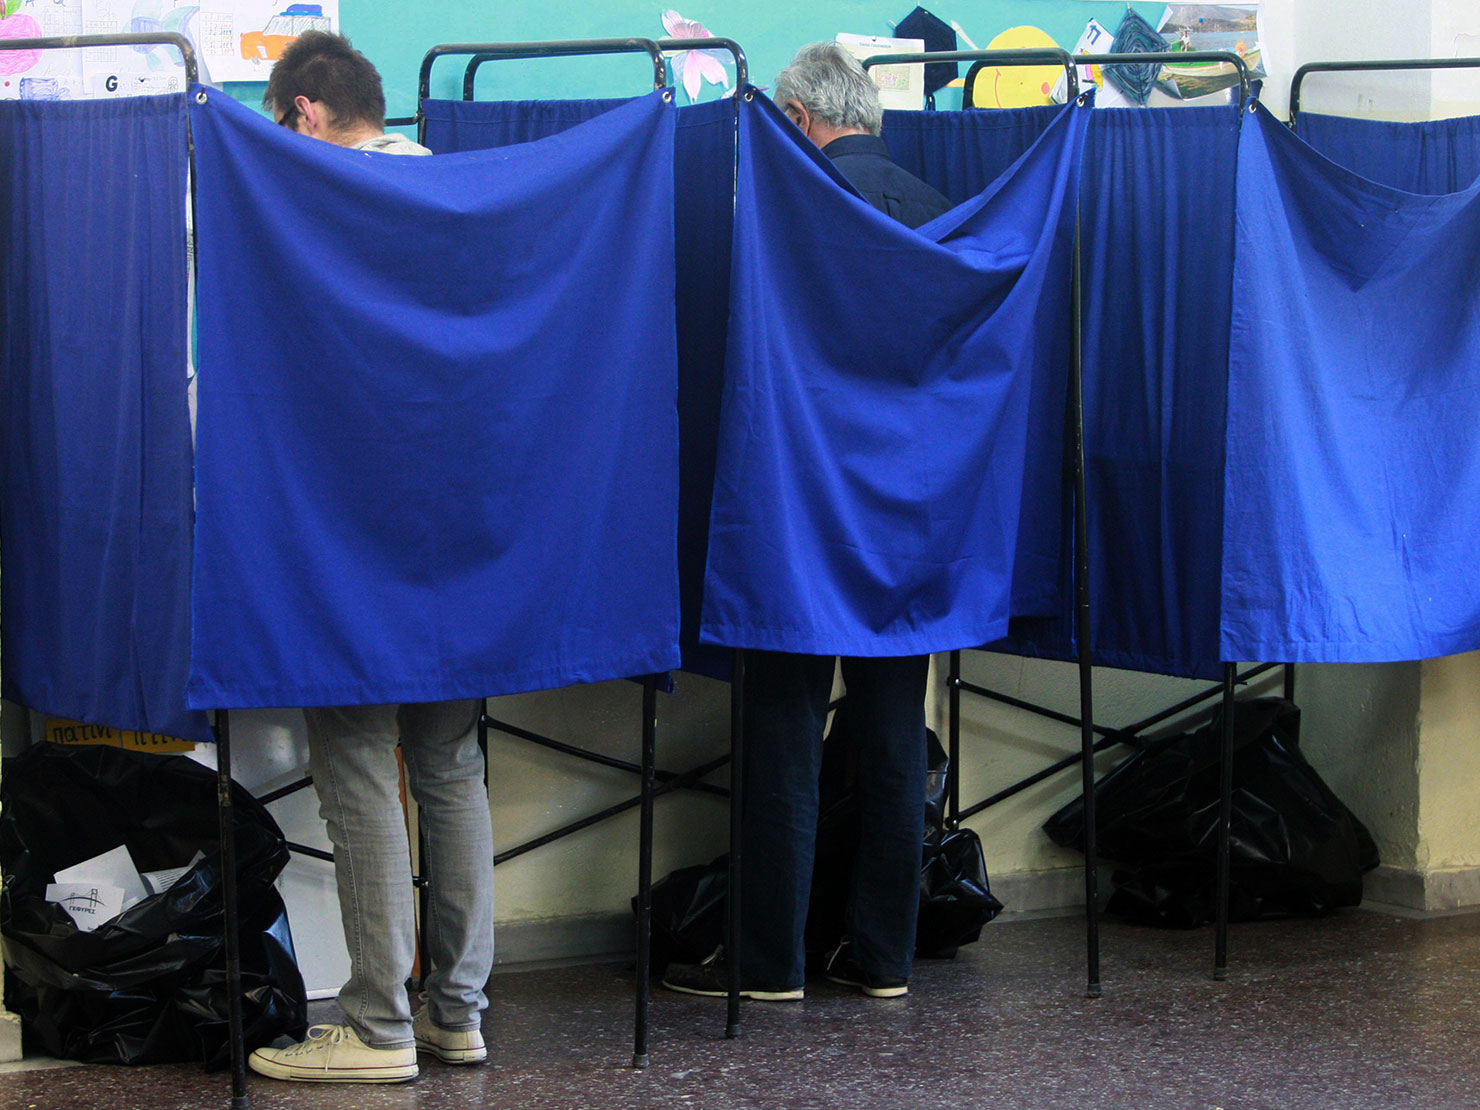 Ομαλά η ψηφοφορία από το πρωί στο νομό Τρικάλων